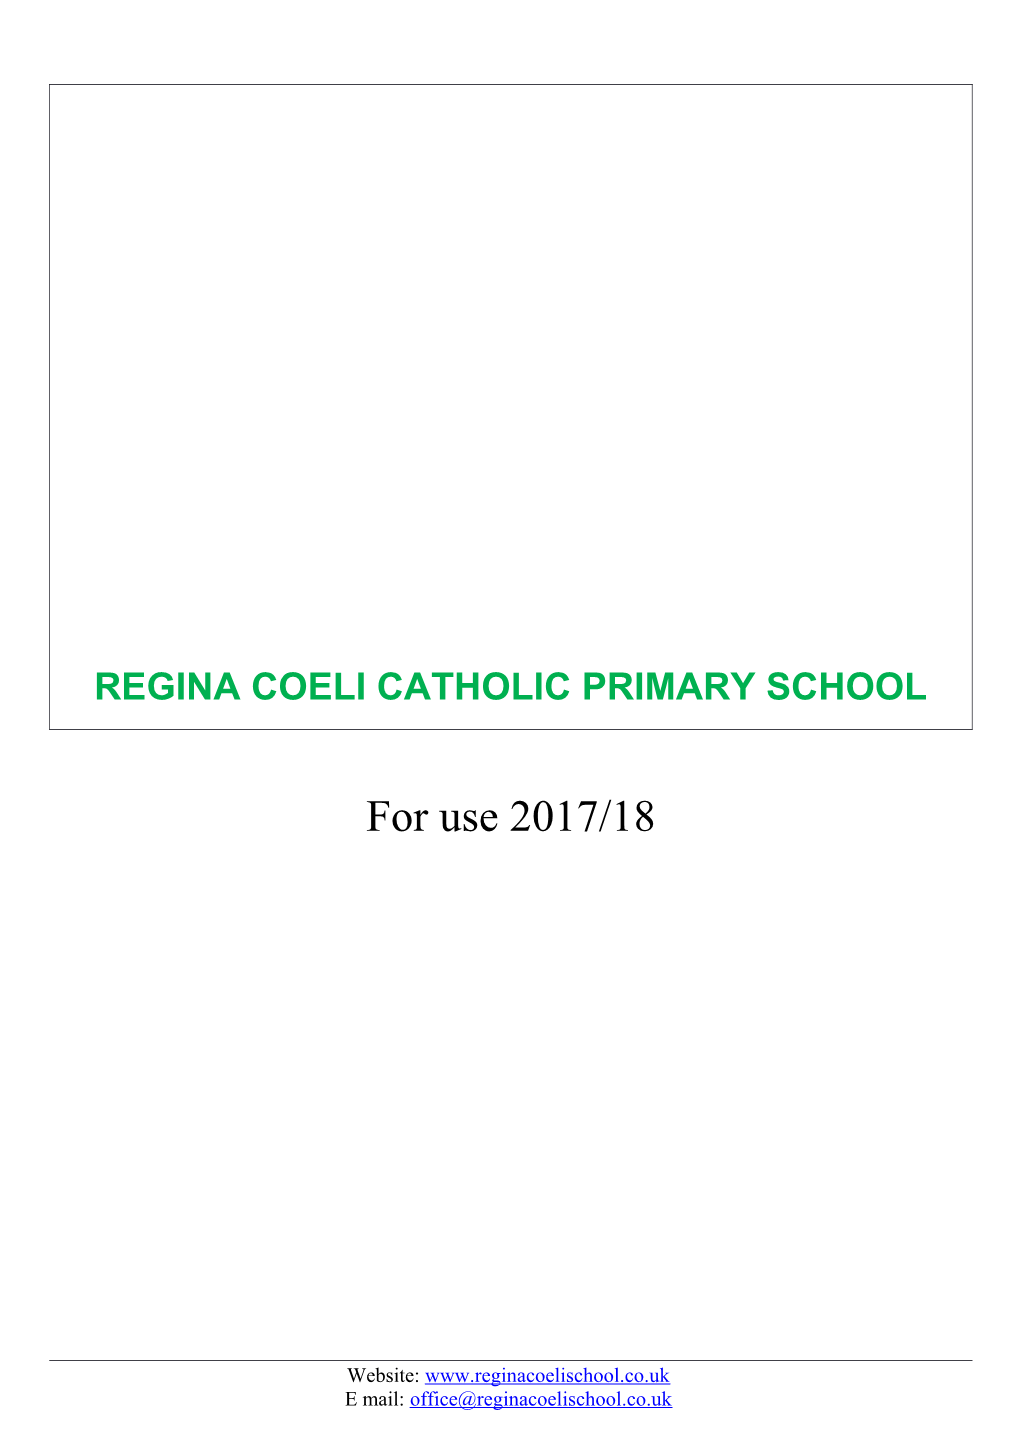 Regina Coeli Admission Policy 2017-18